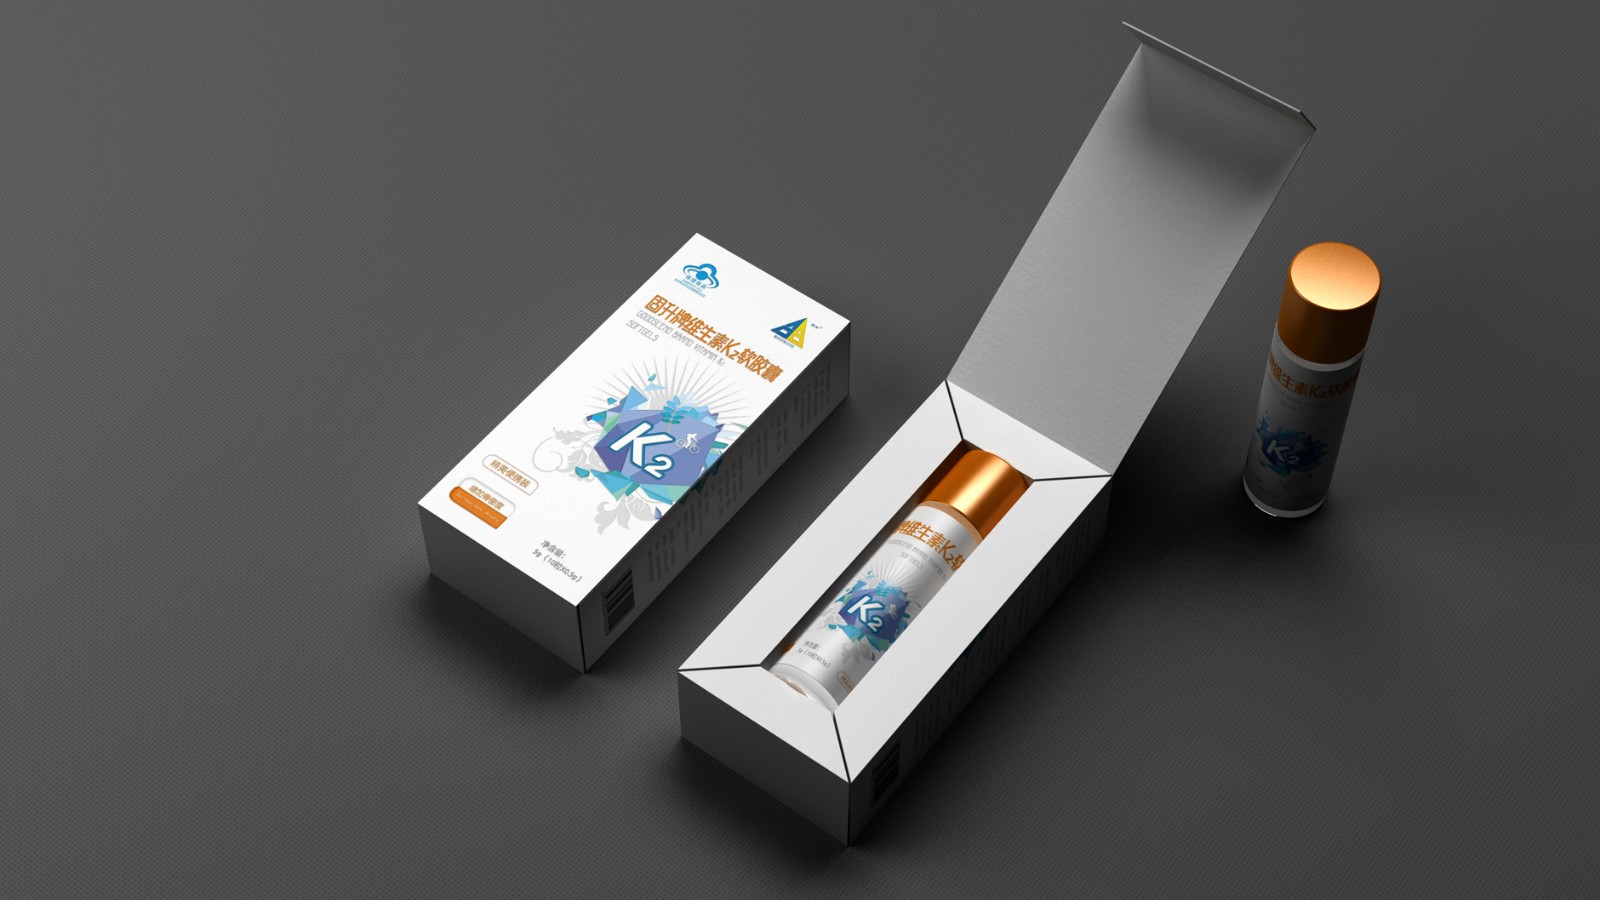 保健品包装盒设计一致性能够加强顾客对你品牌的记忆